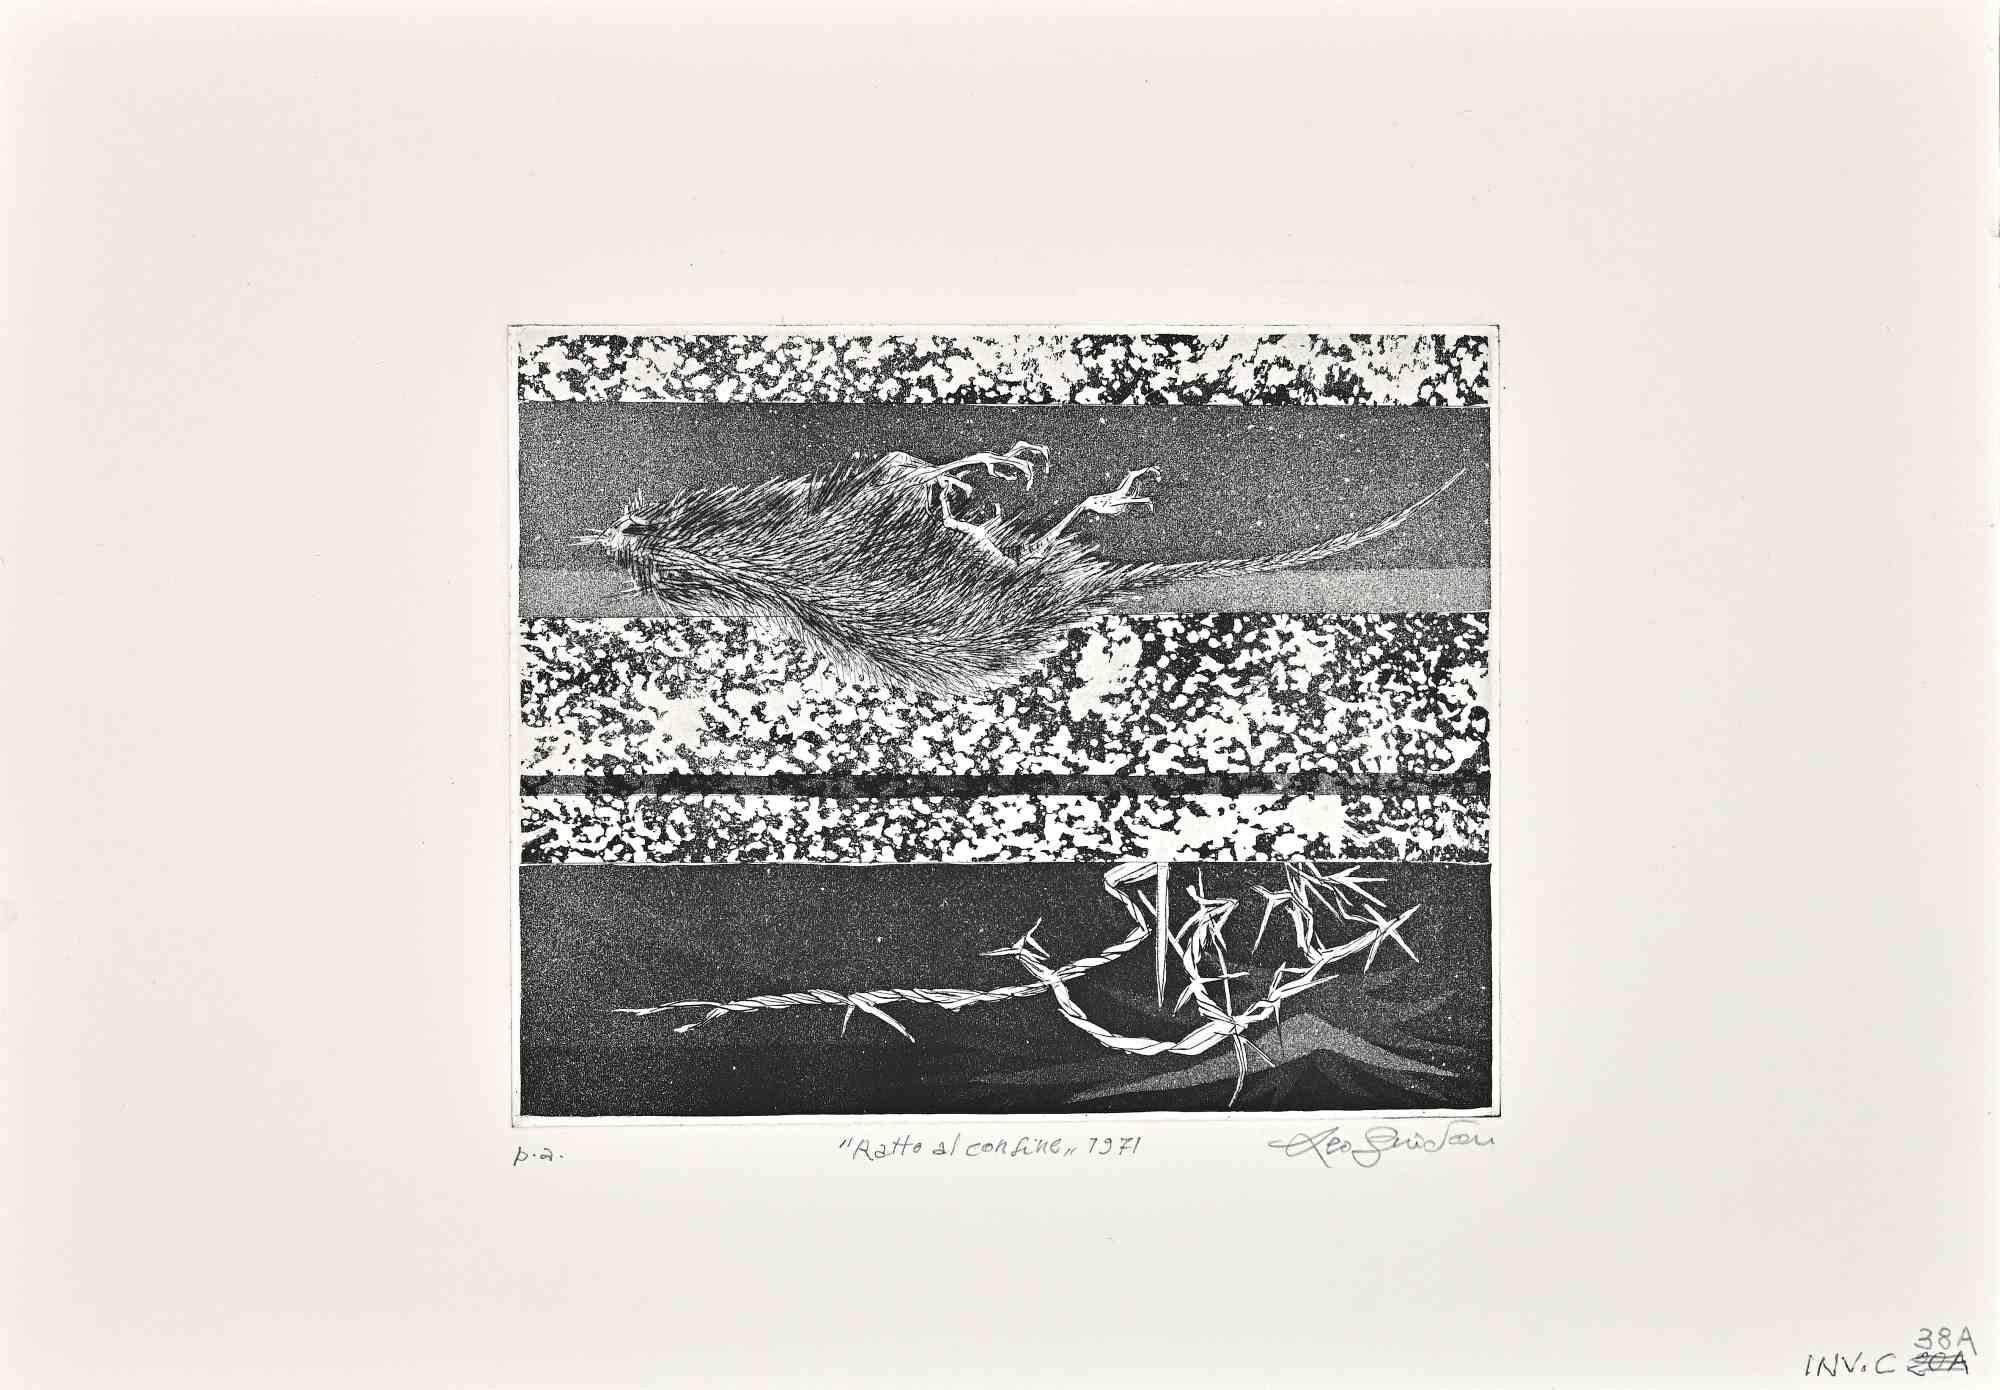 Border Rat ist eine Radierung von Leo Guida aus den 1970er Jahren.

Guter Zustand, proof artist.

Handsigniert, datiert und betitelt vom Künstler mit Bleistift am unteren Rand.

Als Künstler, der ein Gespür für aktuelle Themen, künstlerische